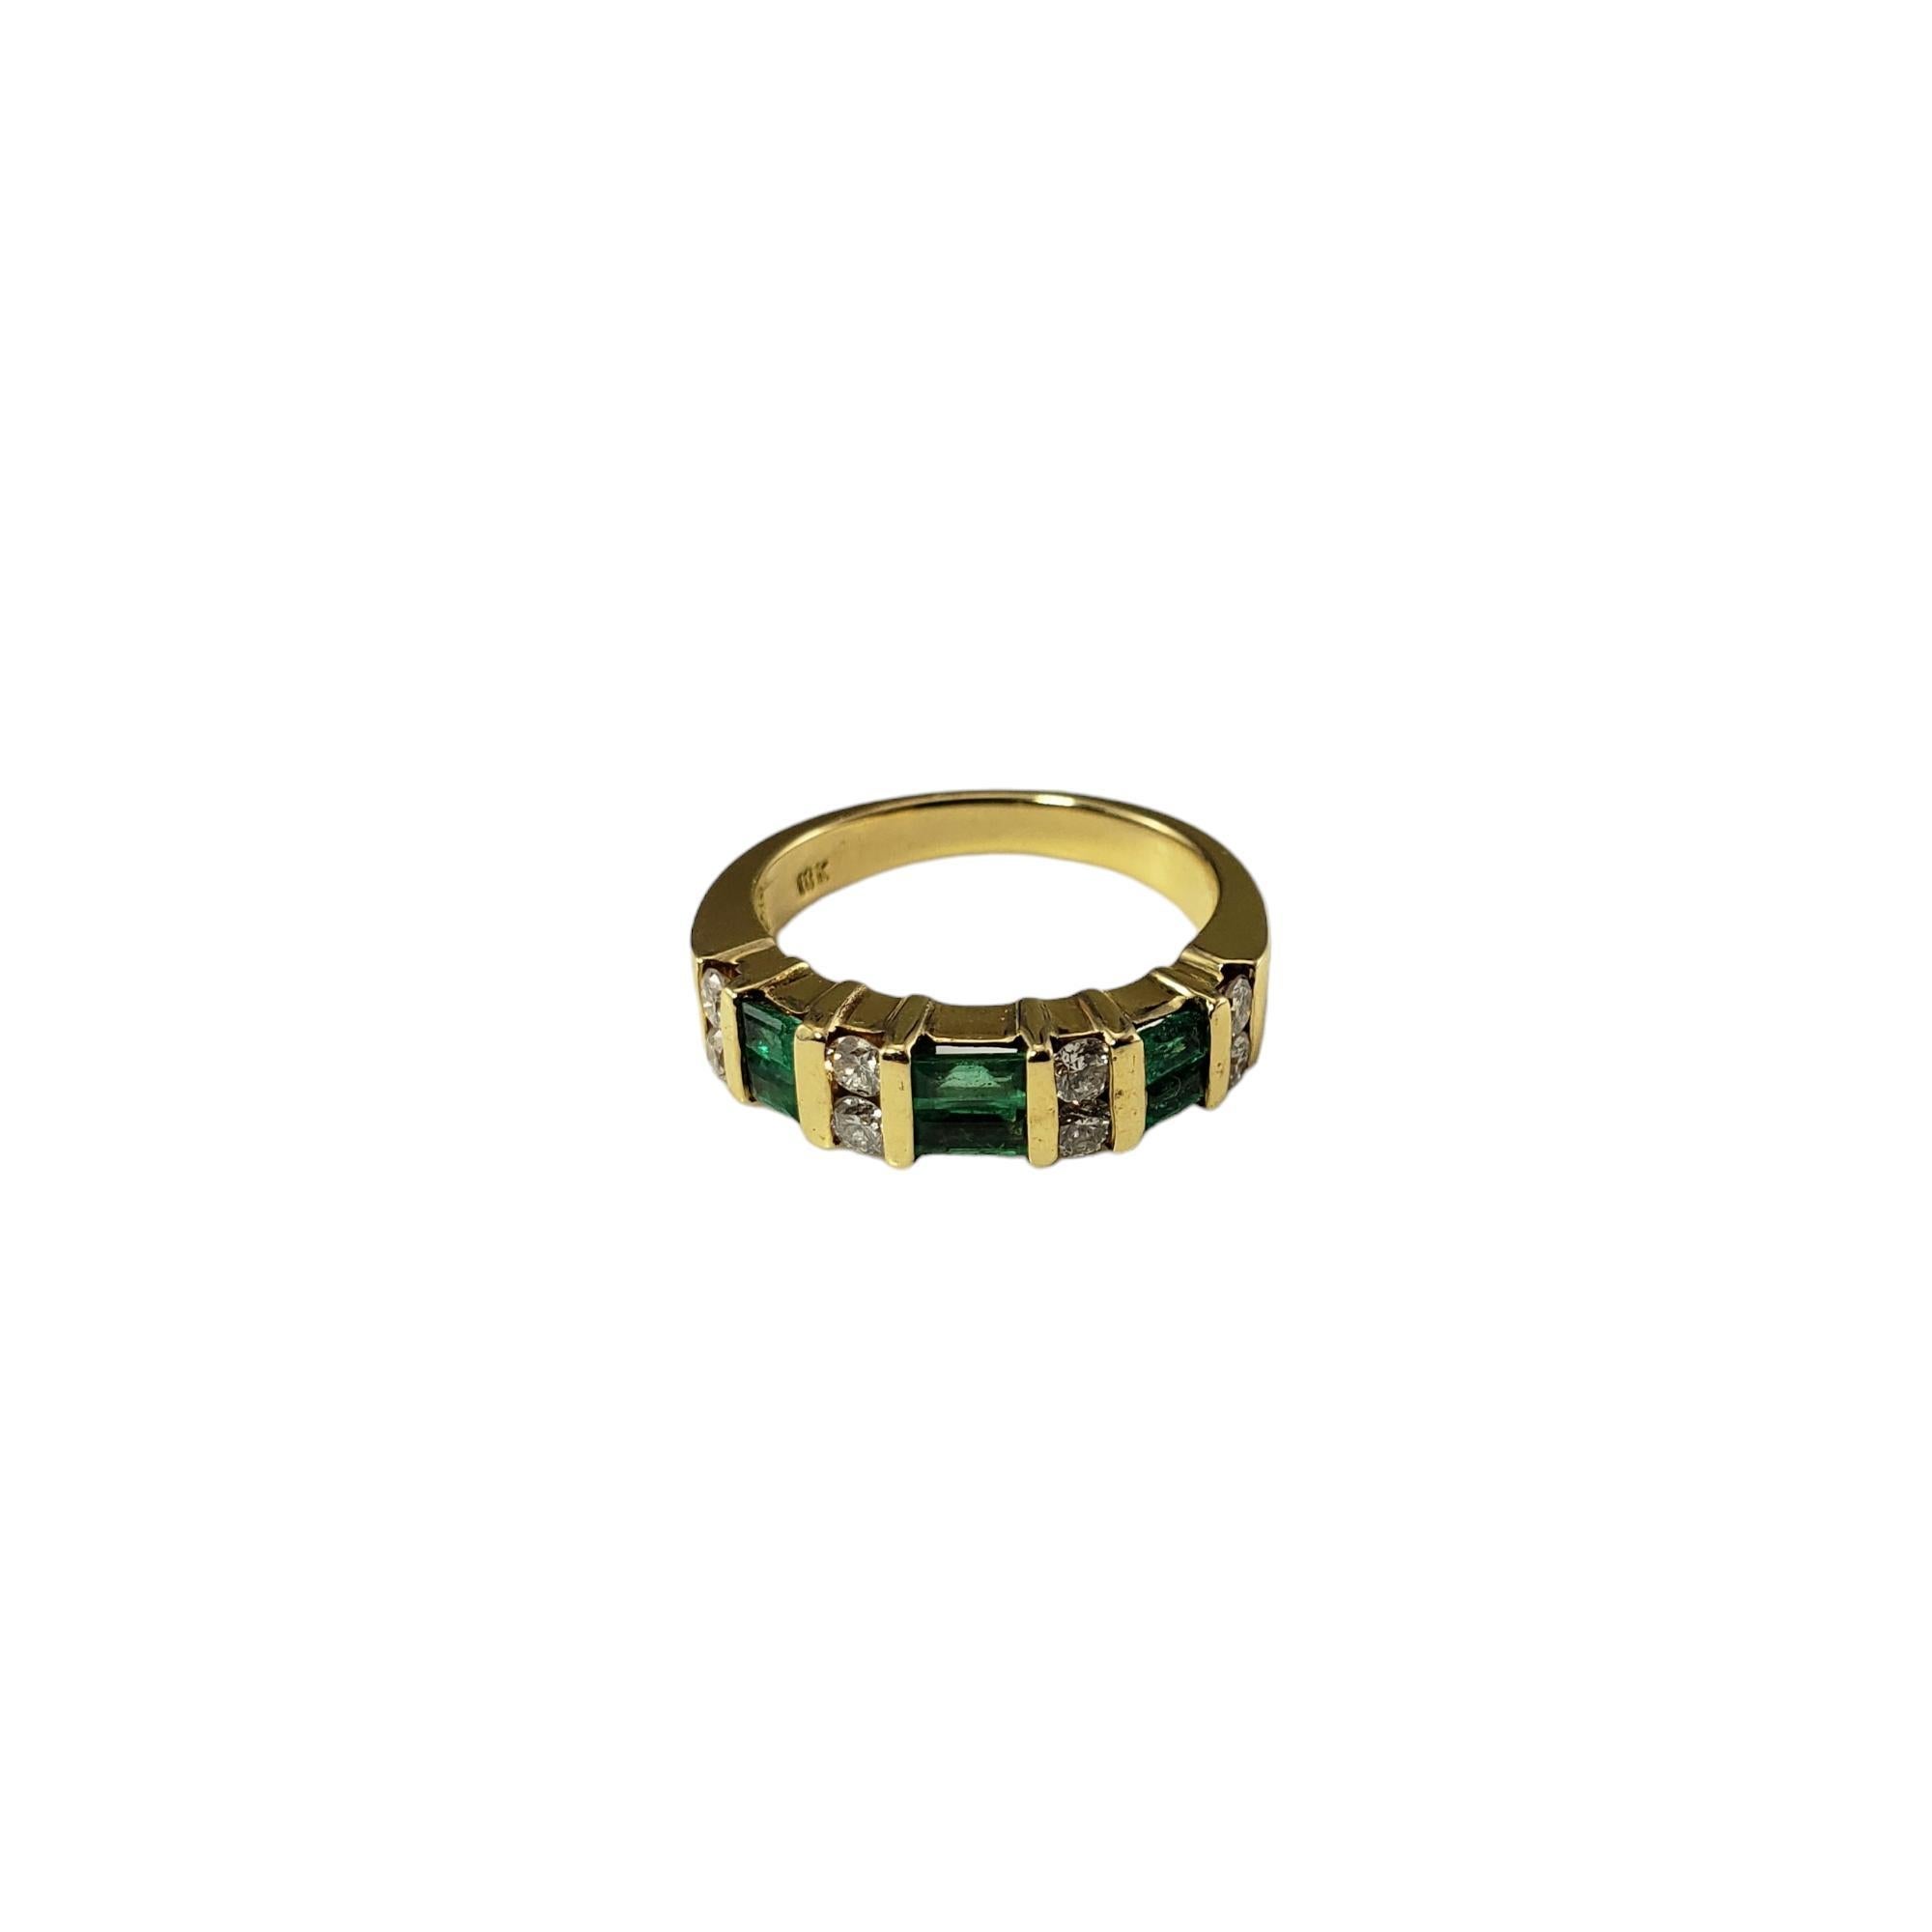 Vintage 18K Gelbgold Smaragd und Diamant Ring Größe 5,75

Dieses schöne Band besteht aus sechs Baguette-Smaragden (je 3,8 mm x 1,9 mm) und acht runden Diamanten im Einzelschliff, gefasst in klassischem 18-karätigem Gelbgold.  Breite: 4 mm.  Schaft: